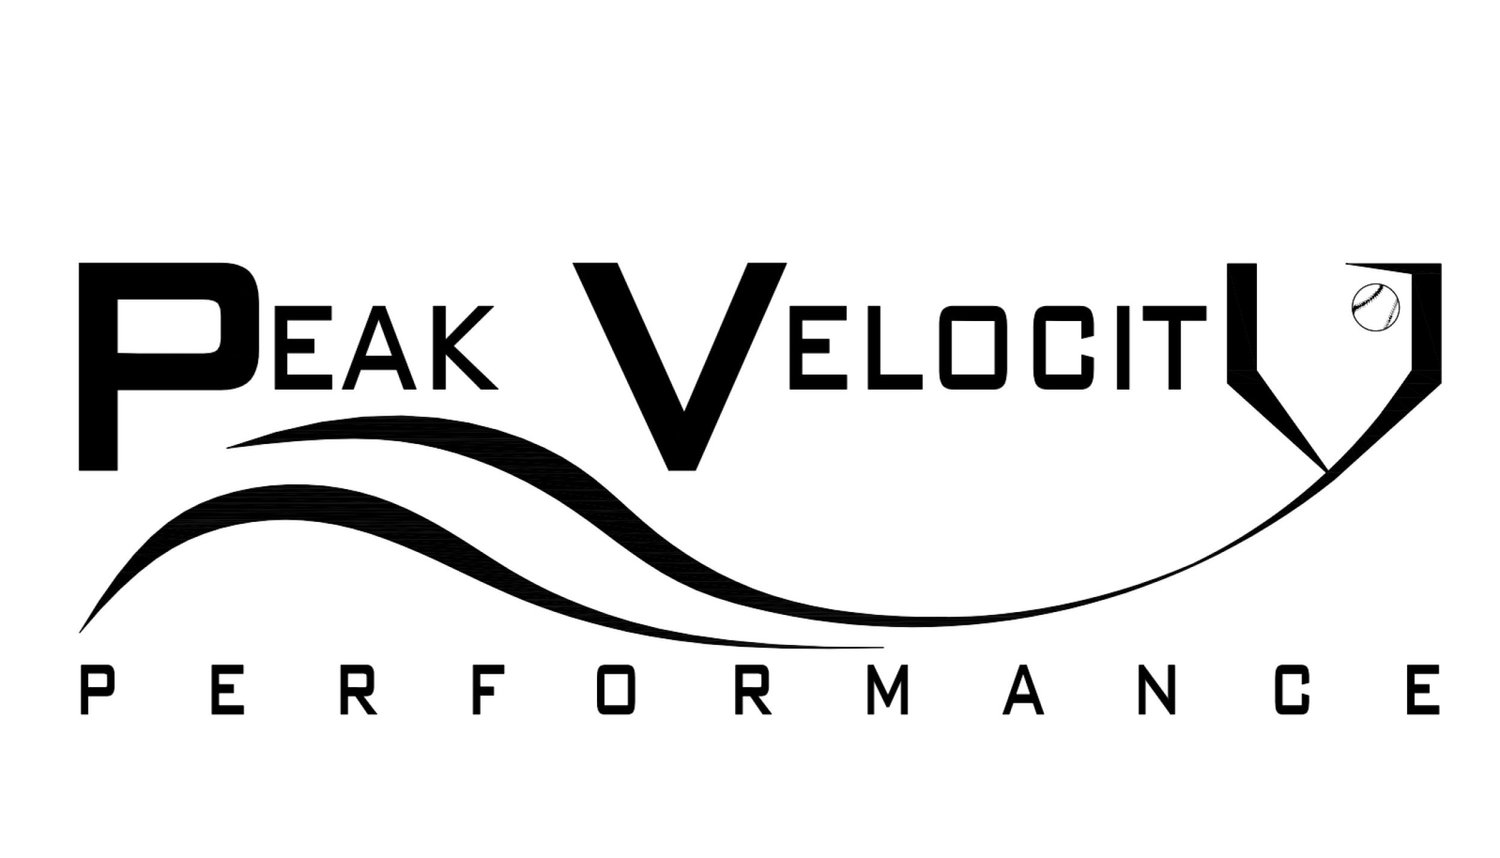 Peak Velocity Performance